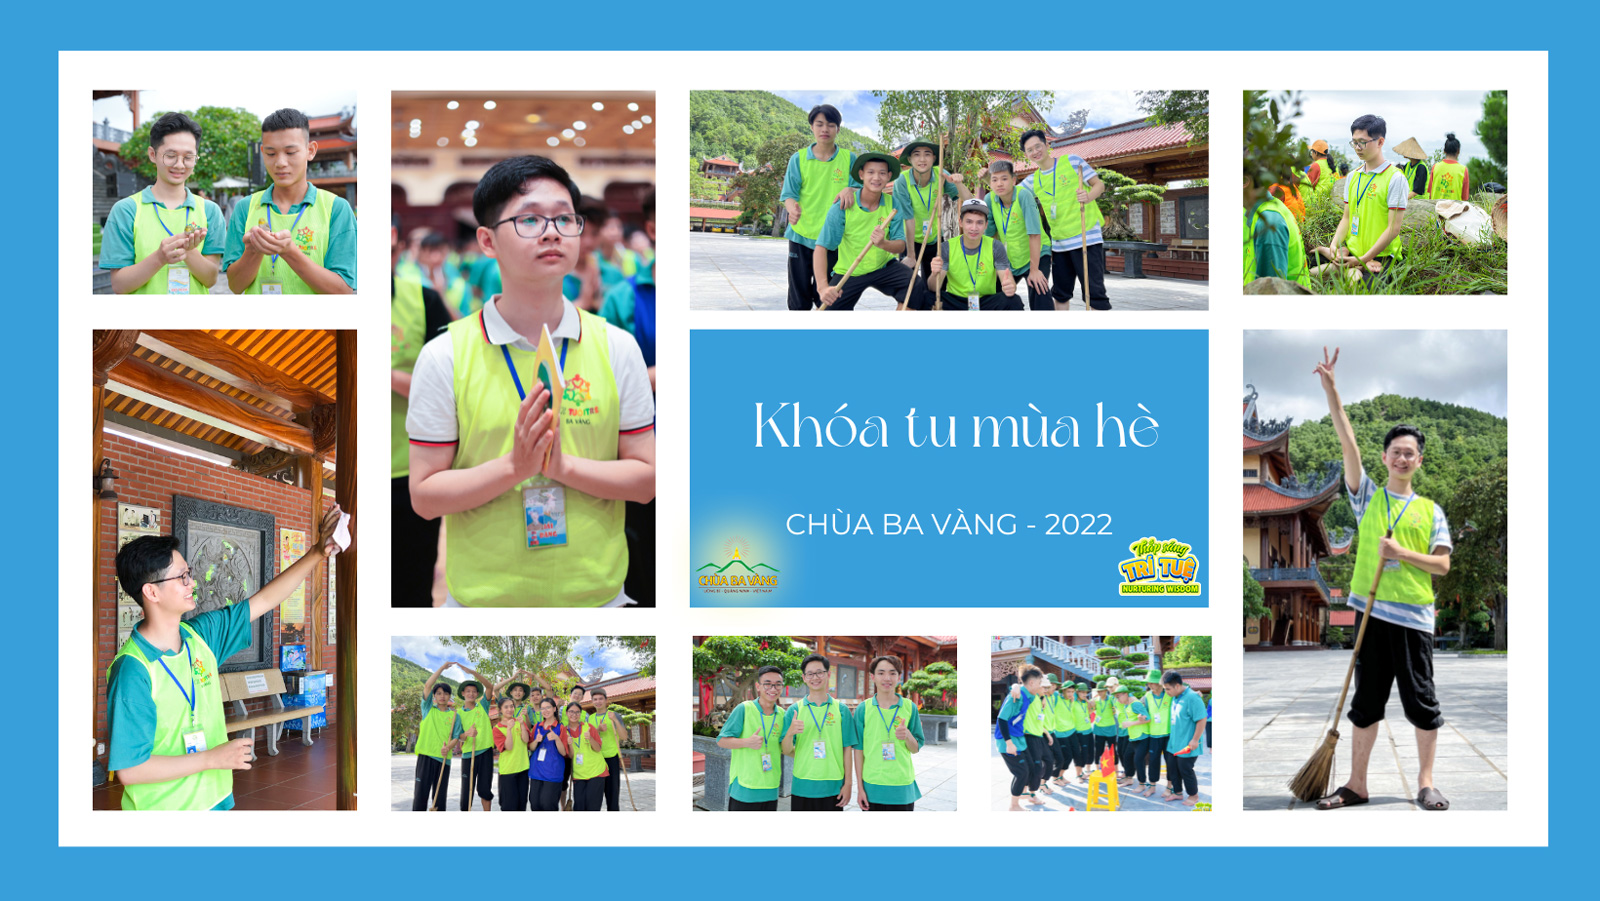 Huy và Hiệu tham gia các hoạt động trong Khóa tu mùa hè chùa Ba Vàng - 2022